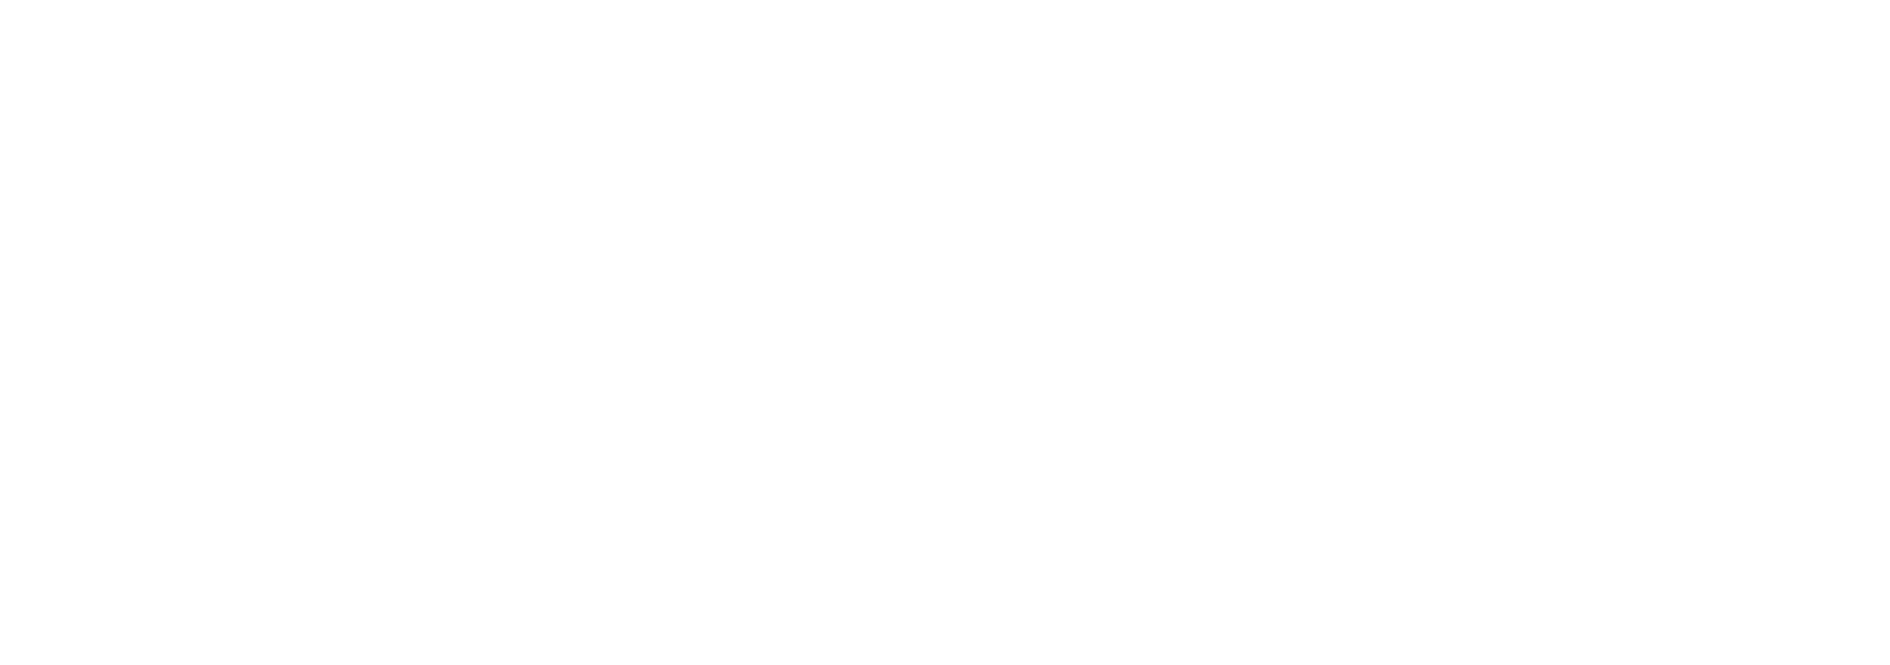 Geisha Asia Pan-Asian Restaurant